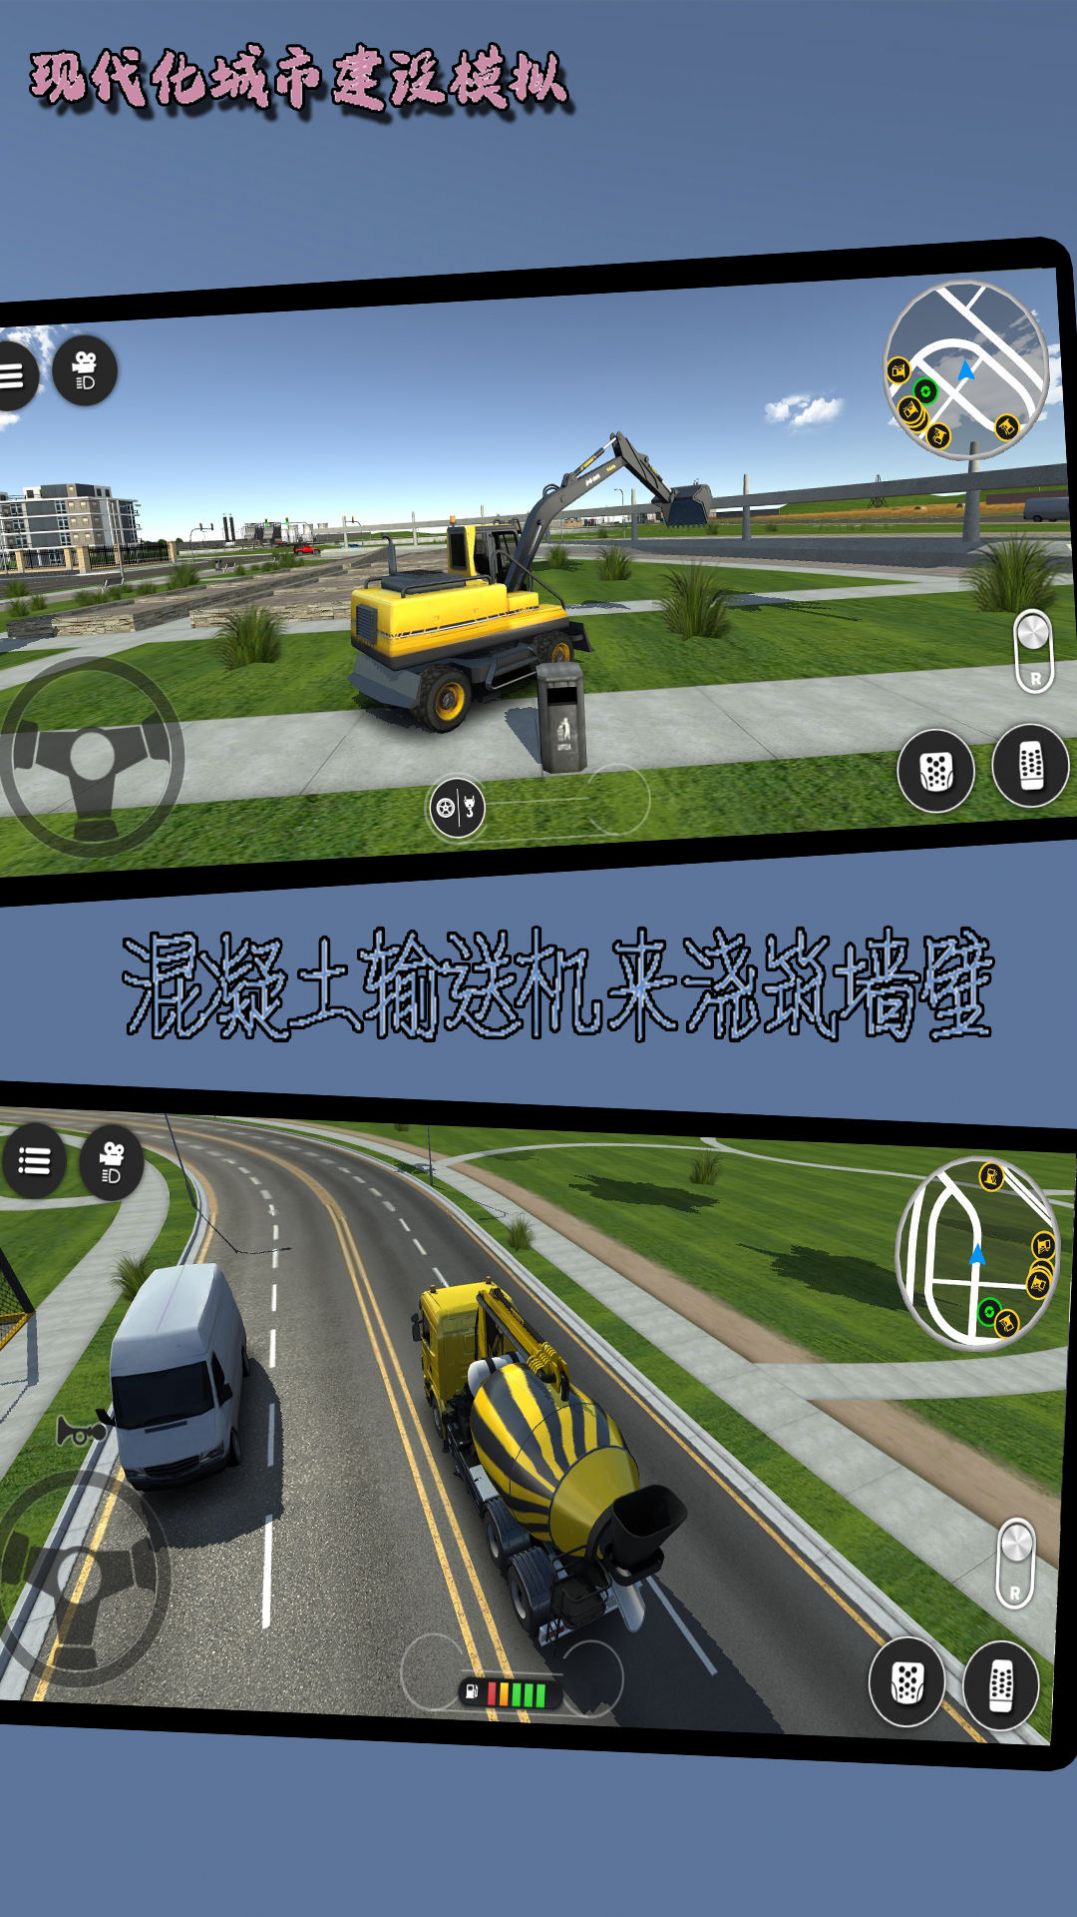 现代化城市建设模拟游戏图2